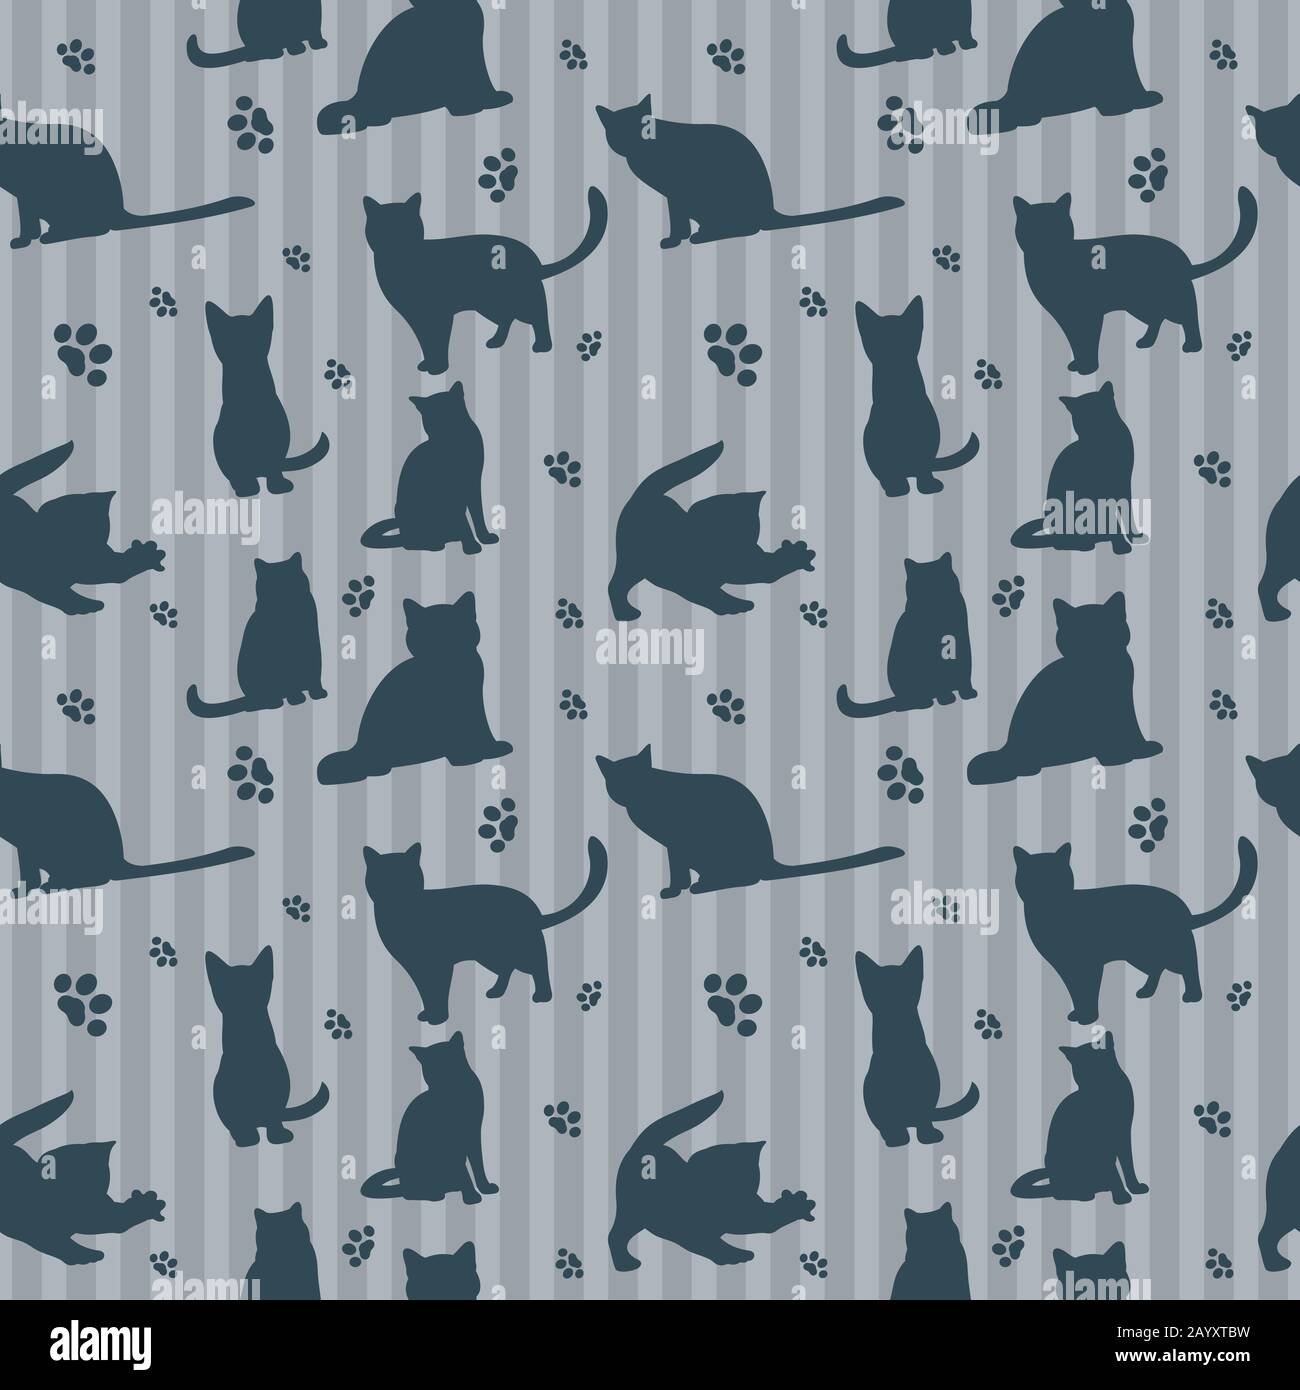 Niedliche Vektorkatzen Silhouetten nahtloses Muster. Hintergrund mit Katzen und Streifen, Illustration Silhouetten Katzen Stock Vektor